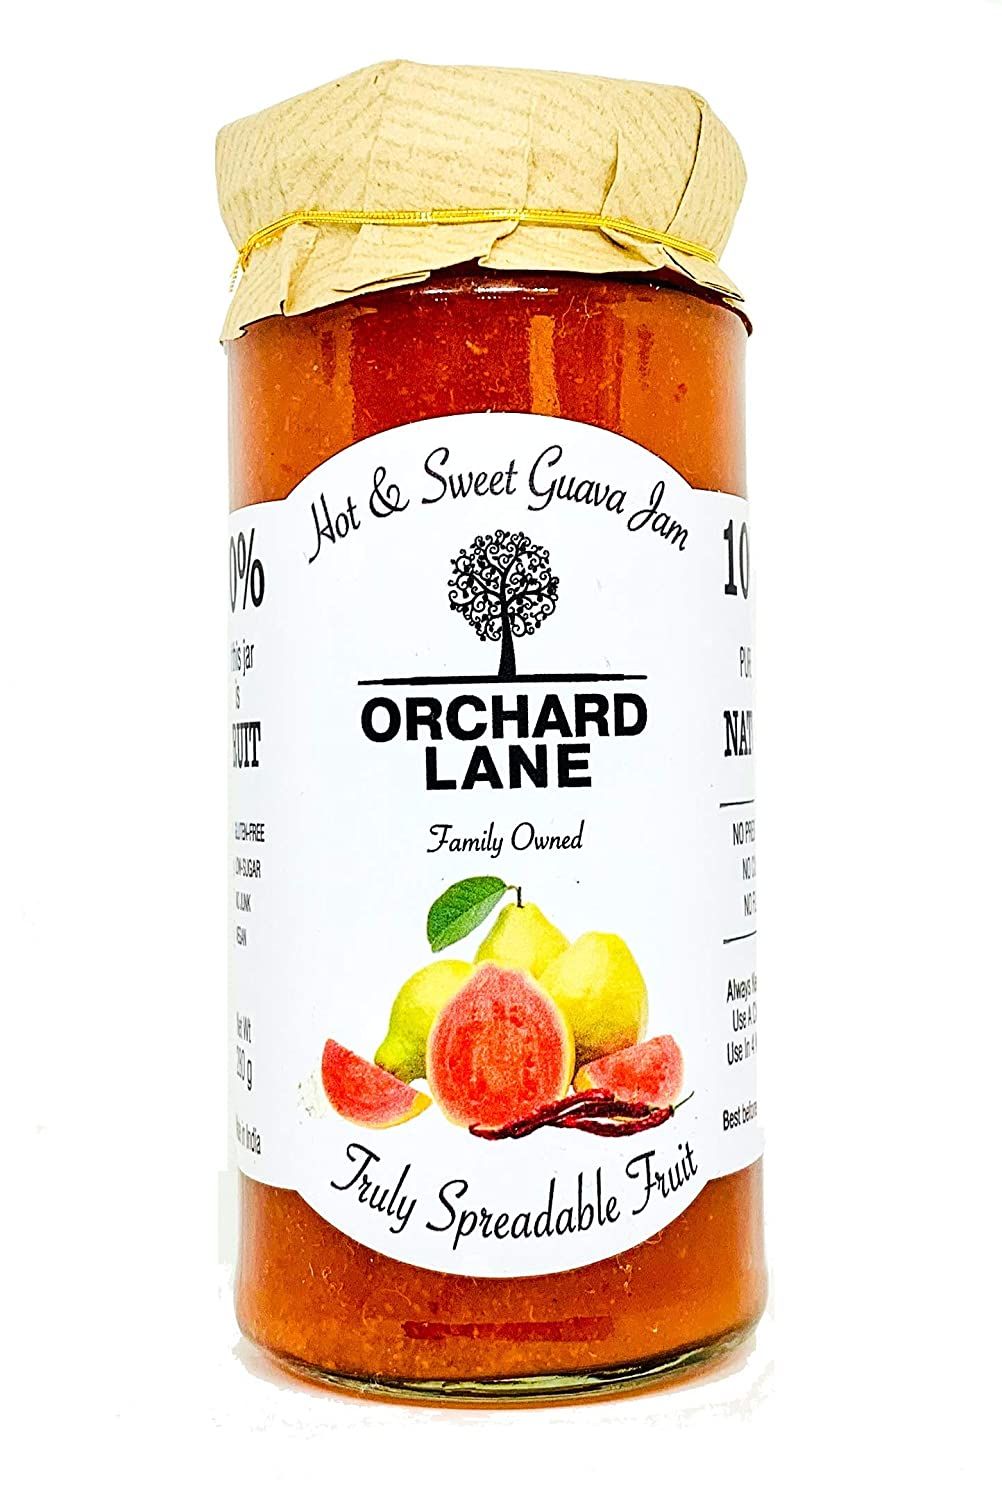 Orchard Lane Hot & Sweet Gauva Jam Image